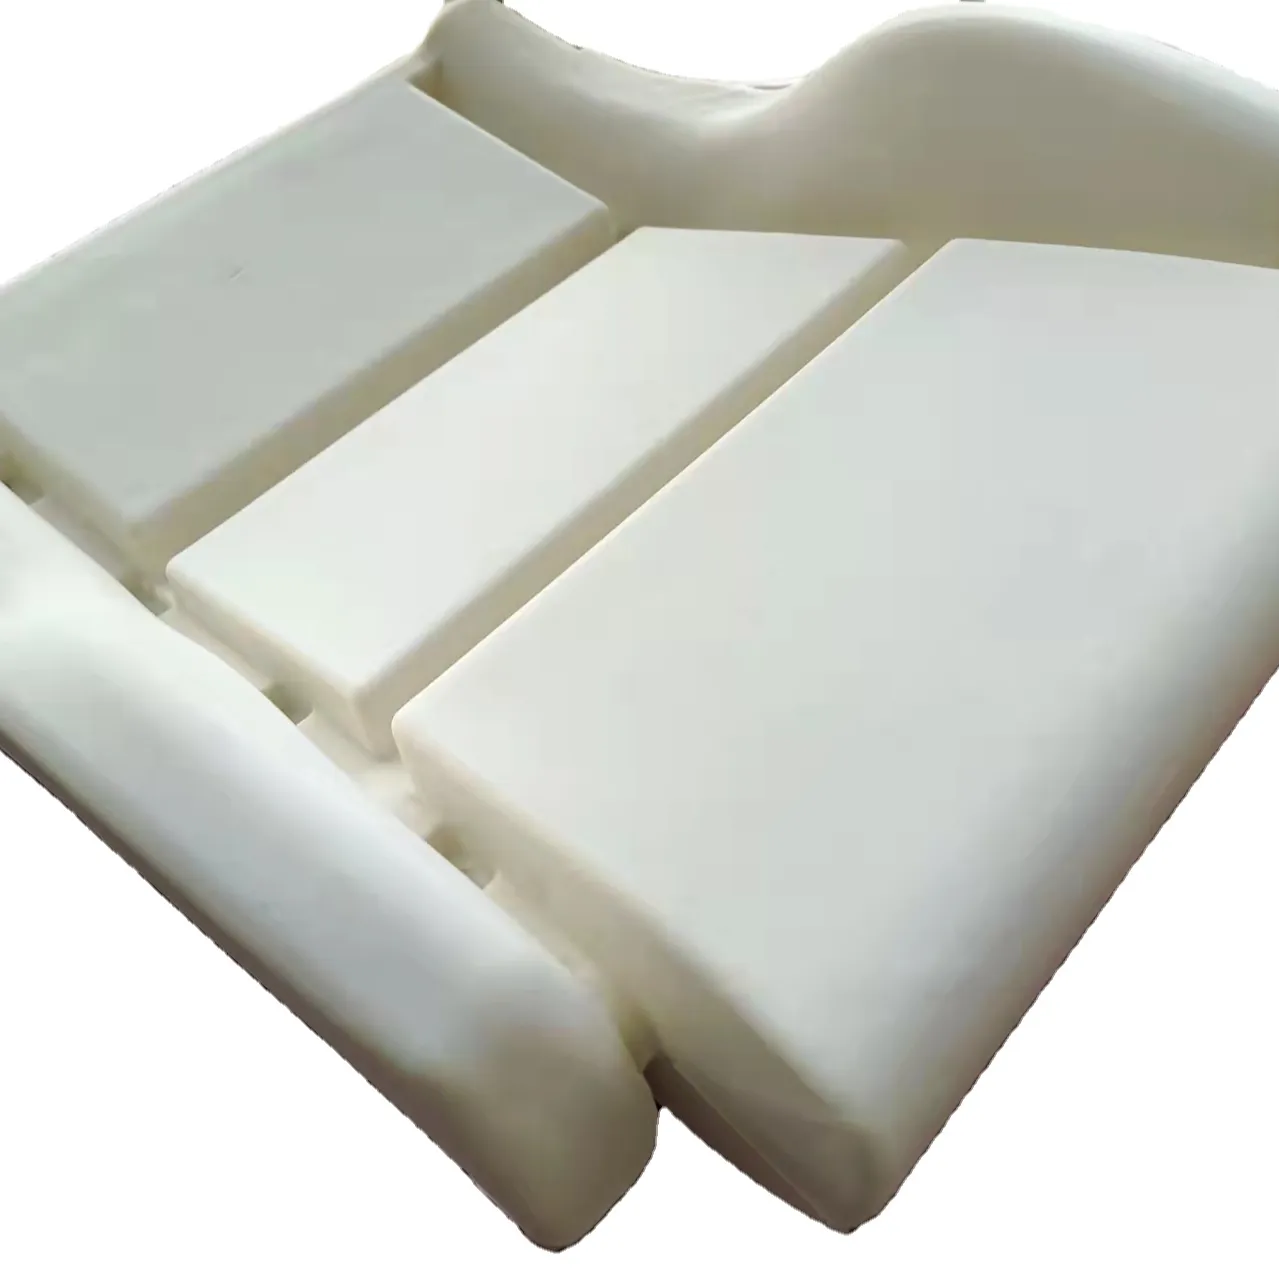 Сменная поролоновая подушка для нижнего сиденья автомобиля VW, поролоновая подушка, изготовленная из высокопрочного полиуретана по заводской цене